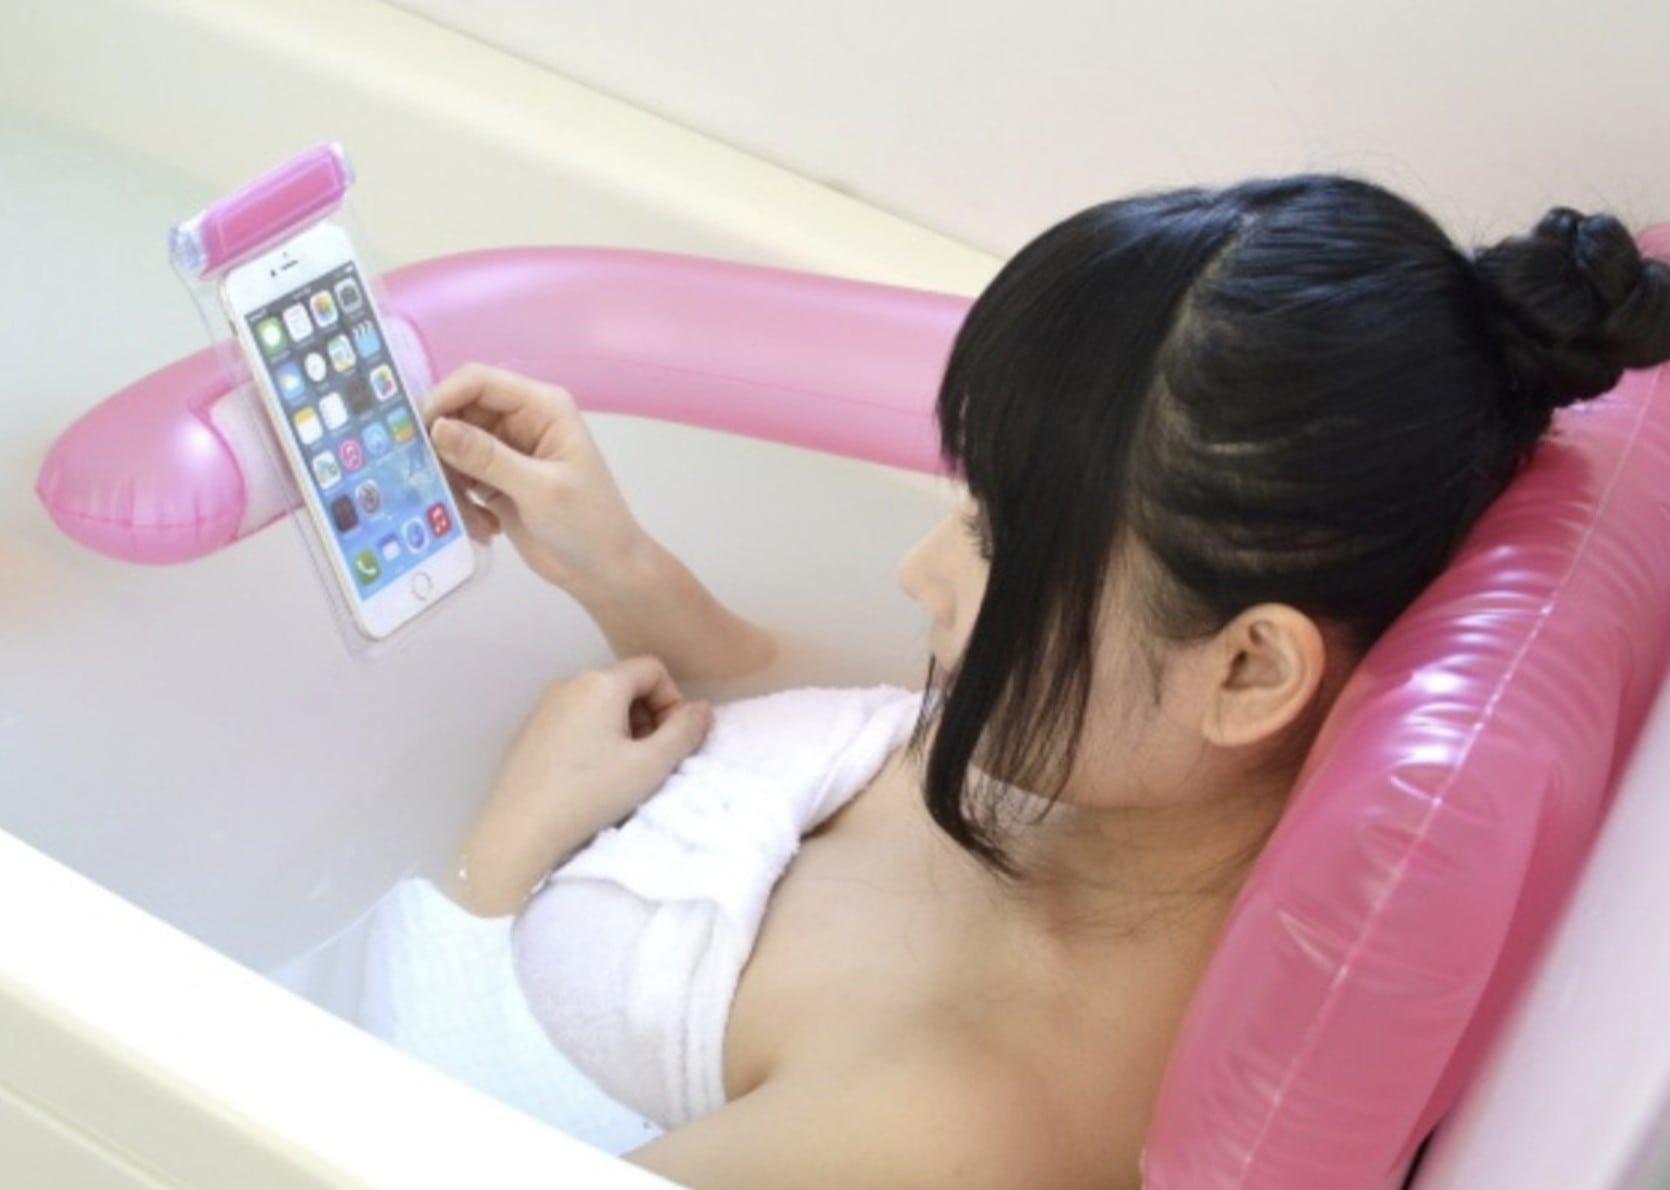 Зарядка телефона в ванной. Телефон в ванной. Человек в ванной с телефоном. Смартфон в ванне. Девушка в ванной с телефоном.